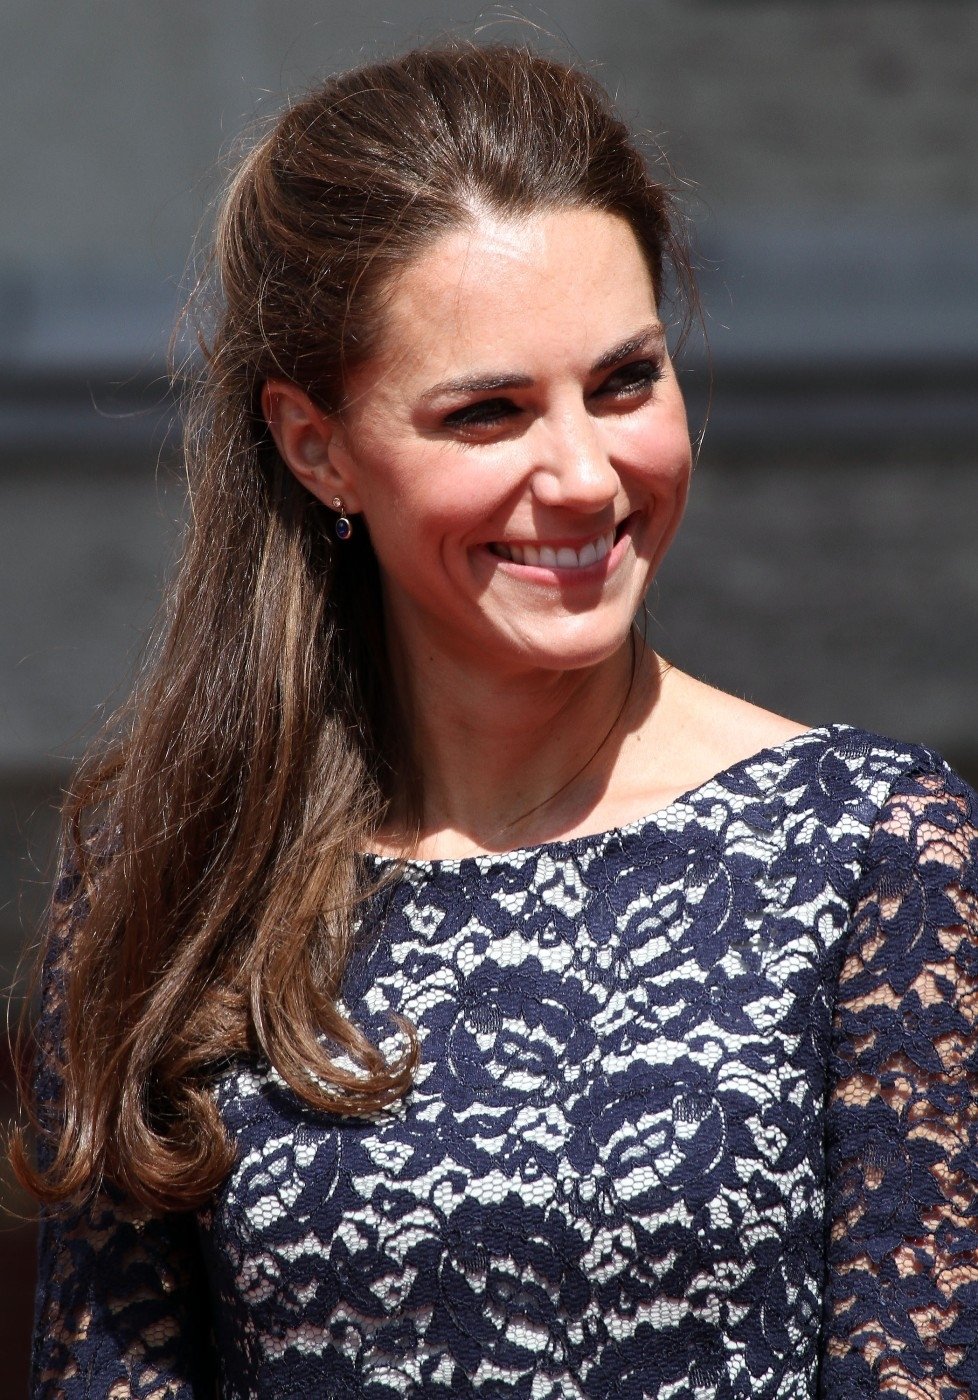 Kate brzy přivede na svět dědice královského trůnu